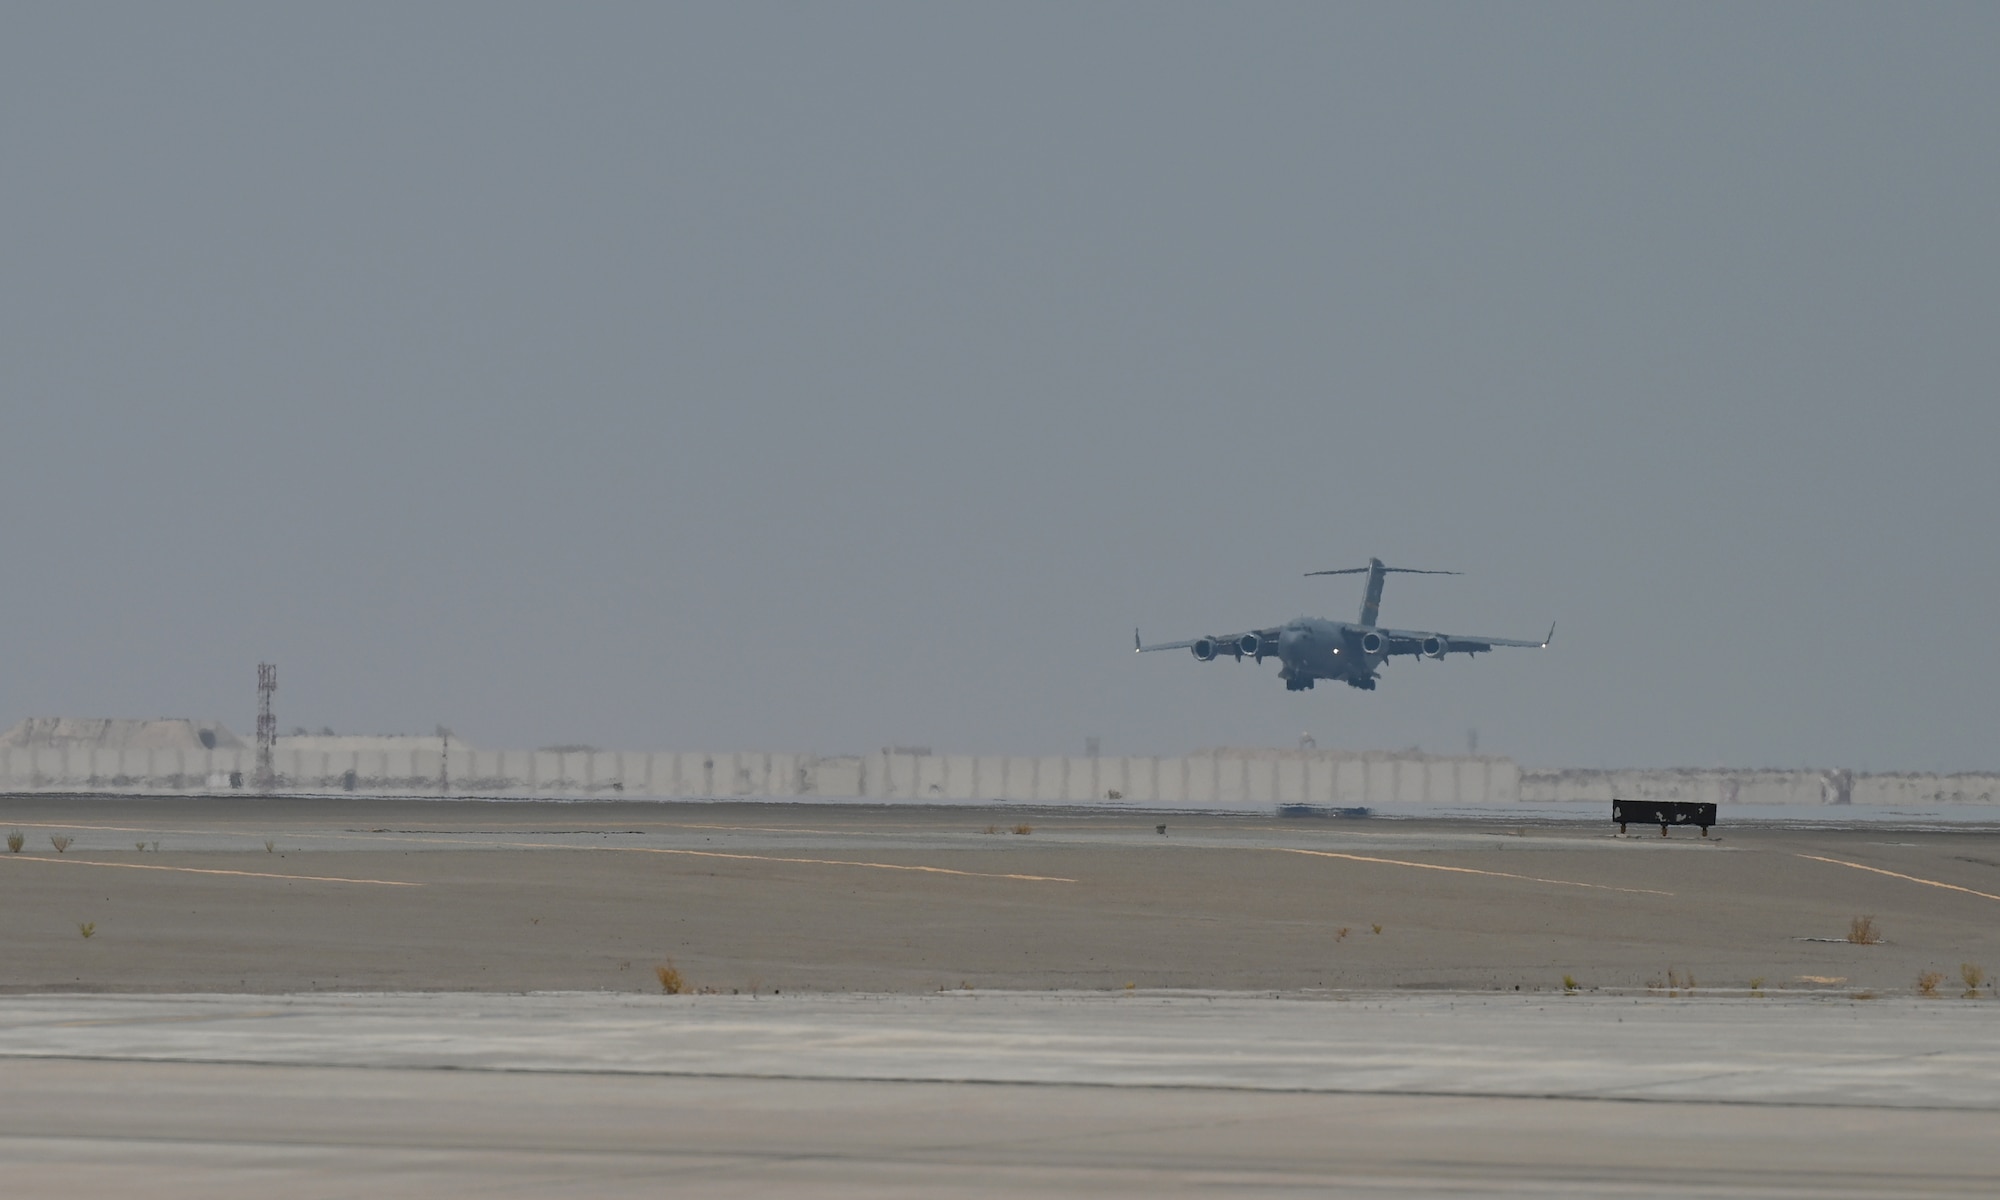 A photo of an aircraft landing.